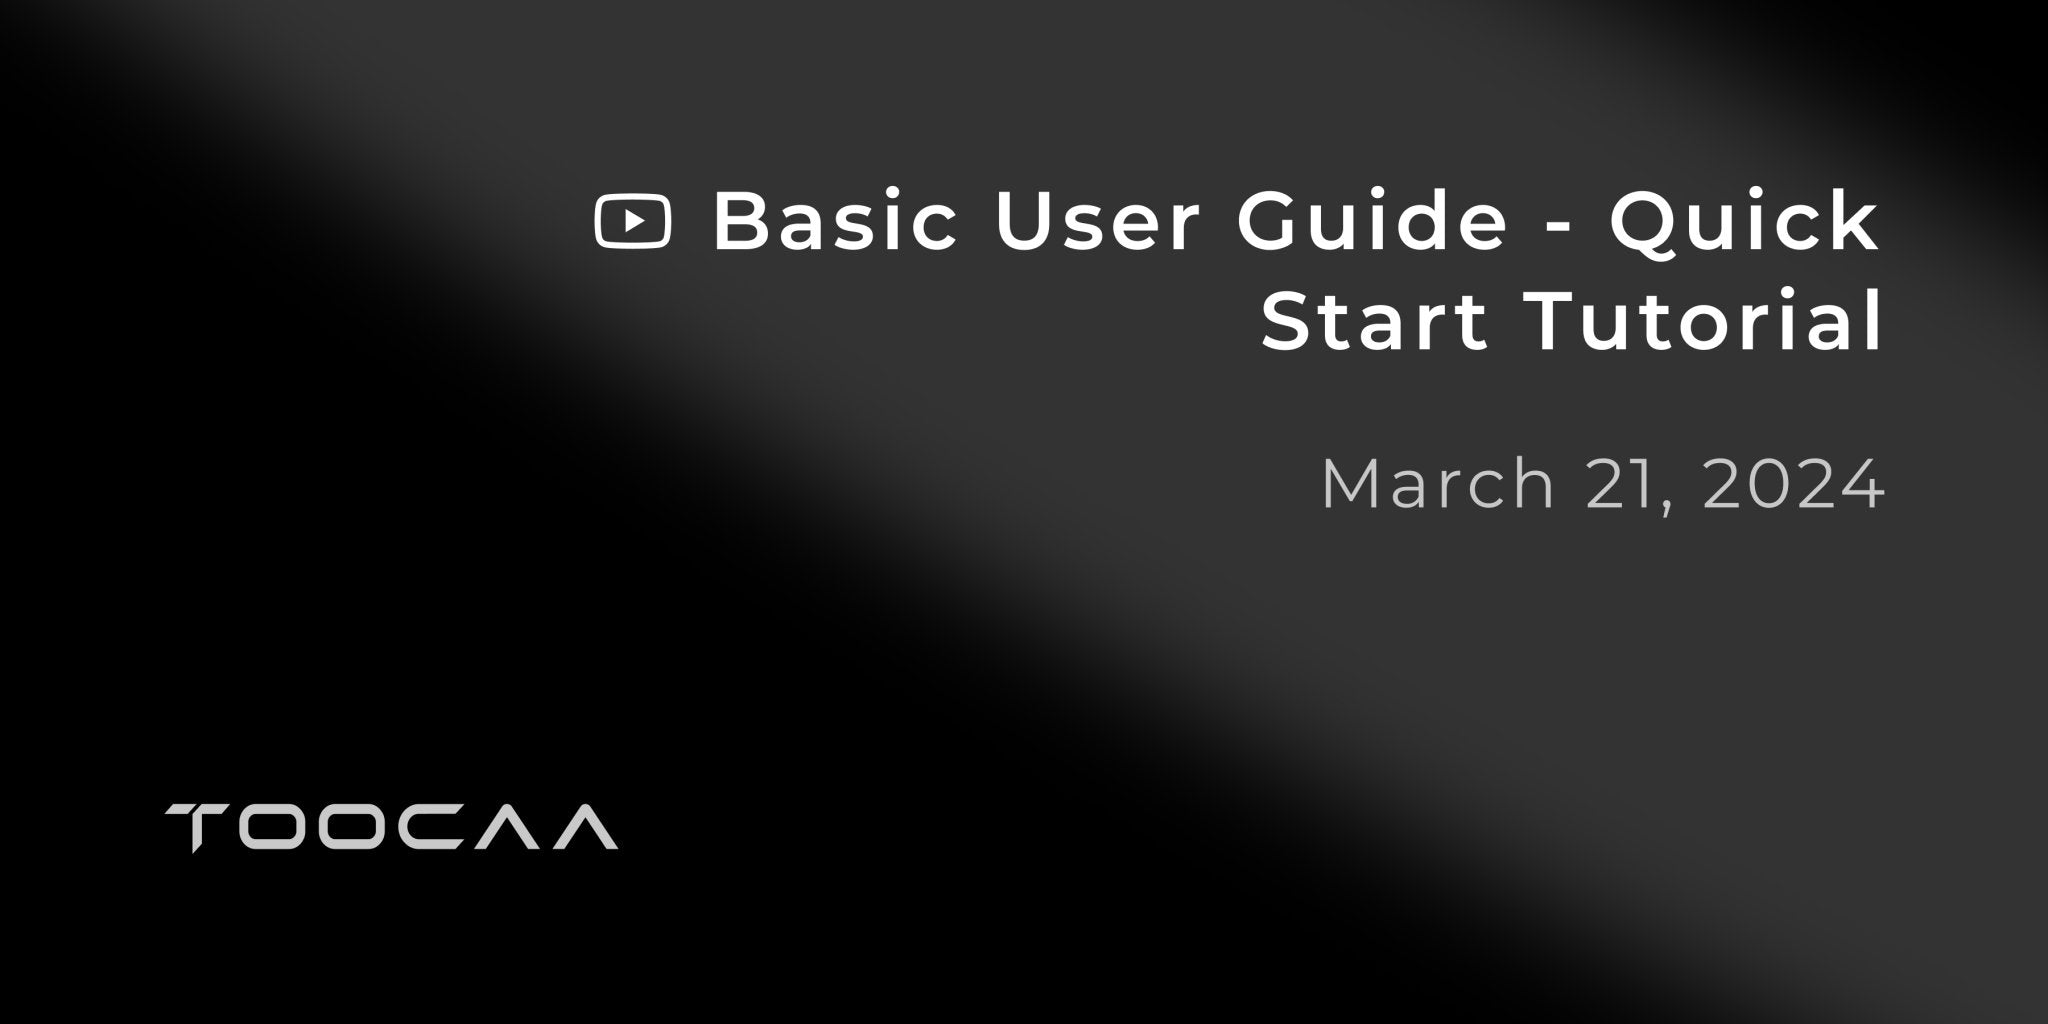 Basic User Guide - Quick Start Tutorial